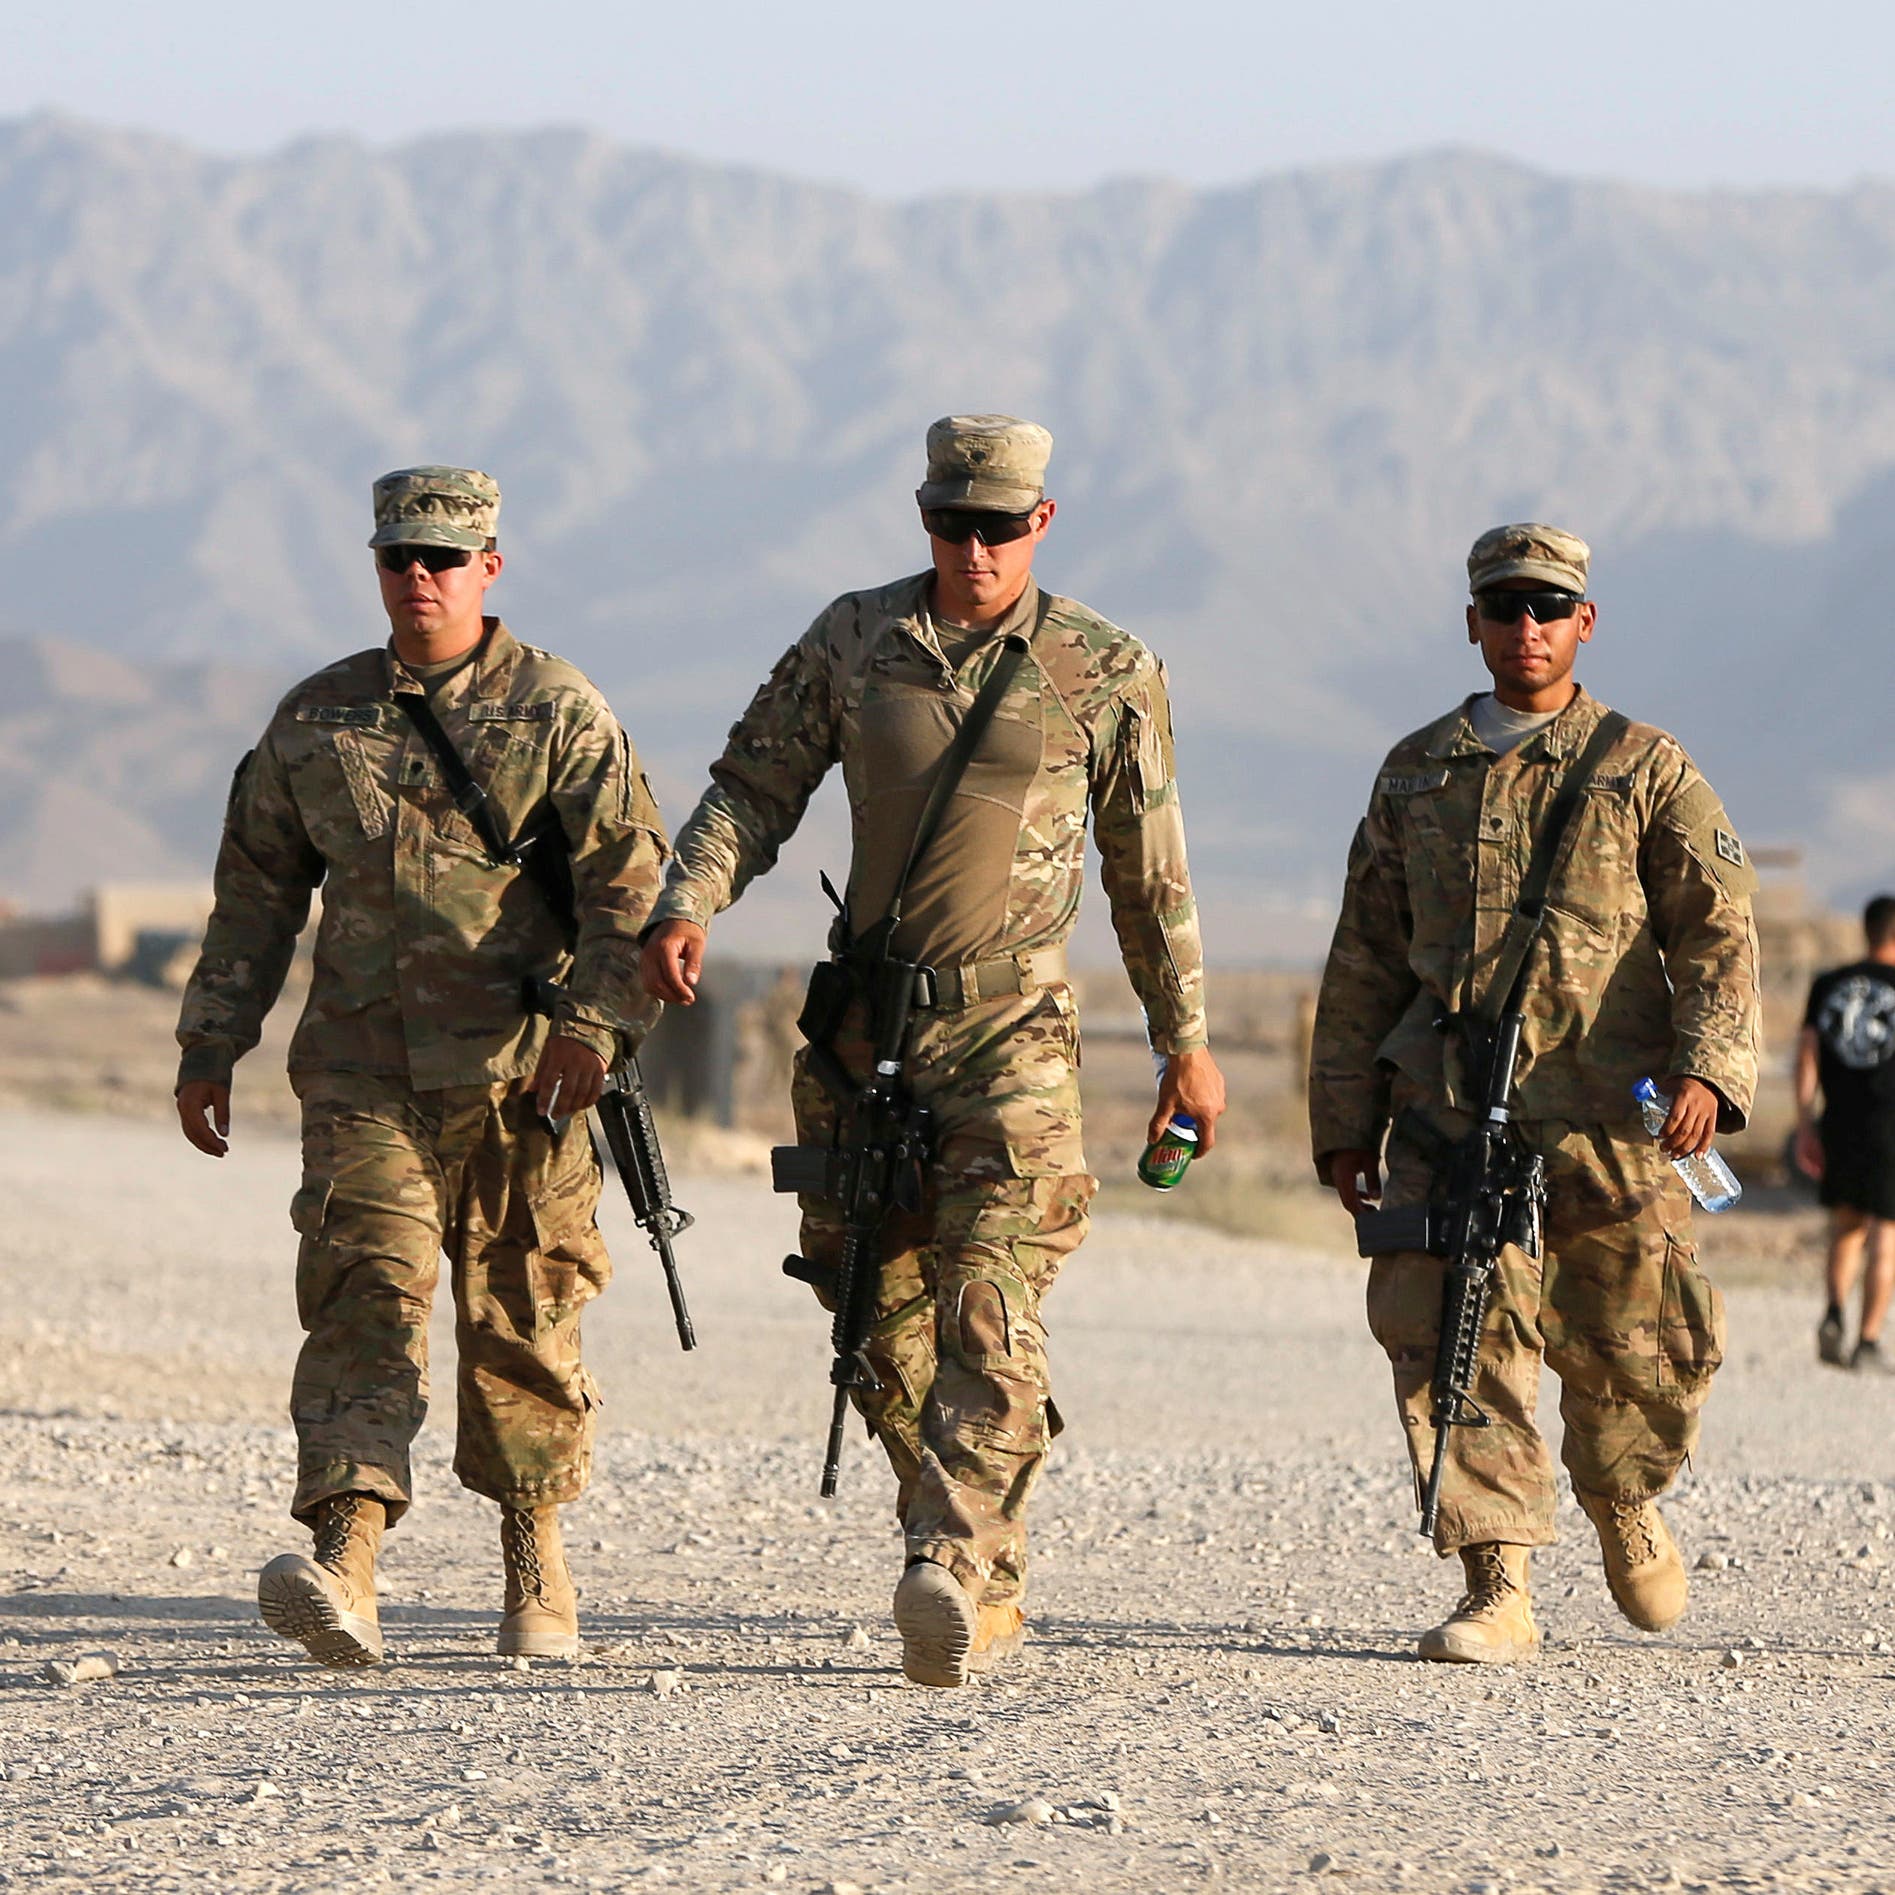 ترمب يعتزم سحب آخر جندي أميركي من أفغانستان